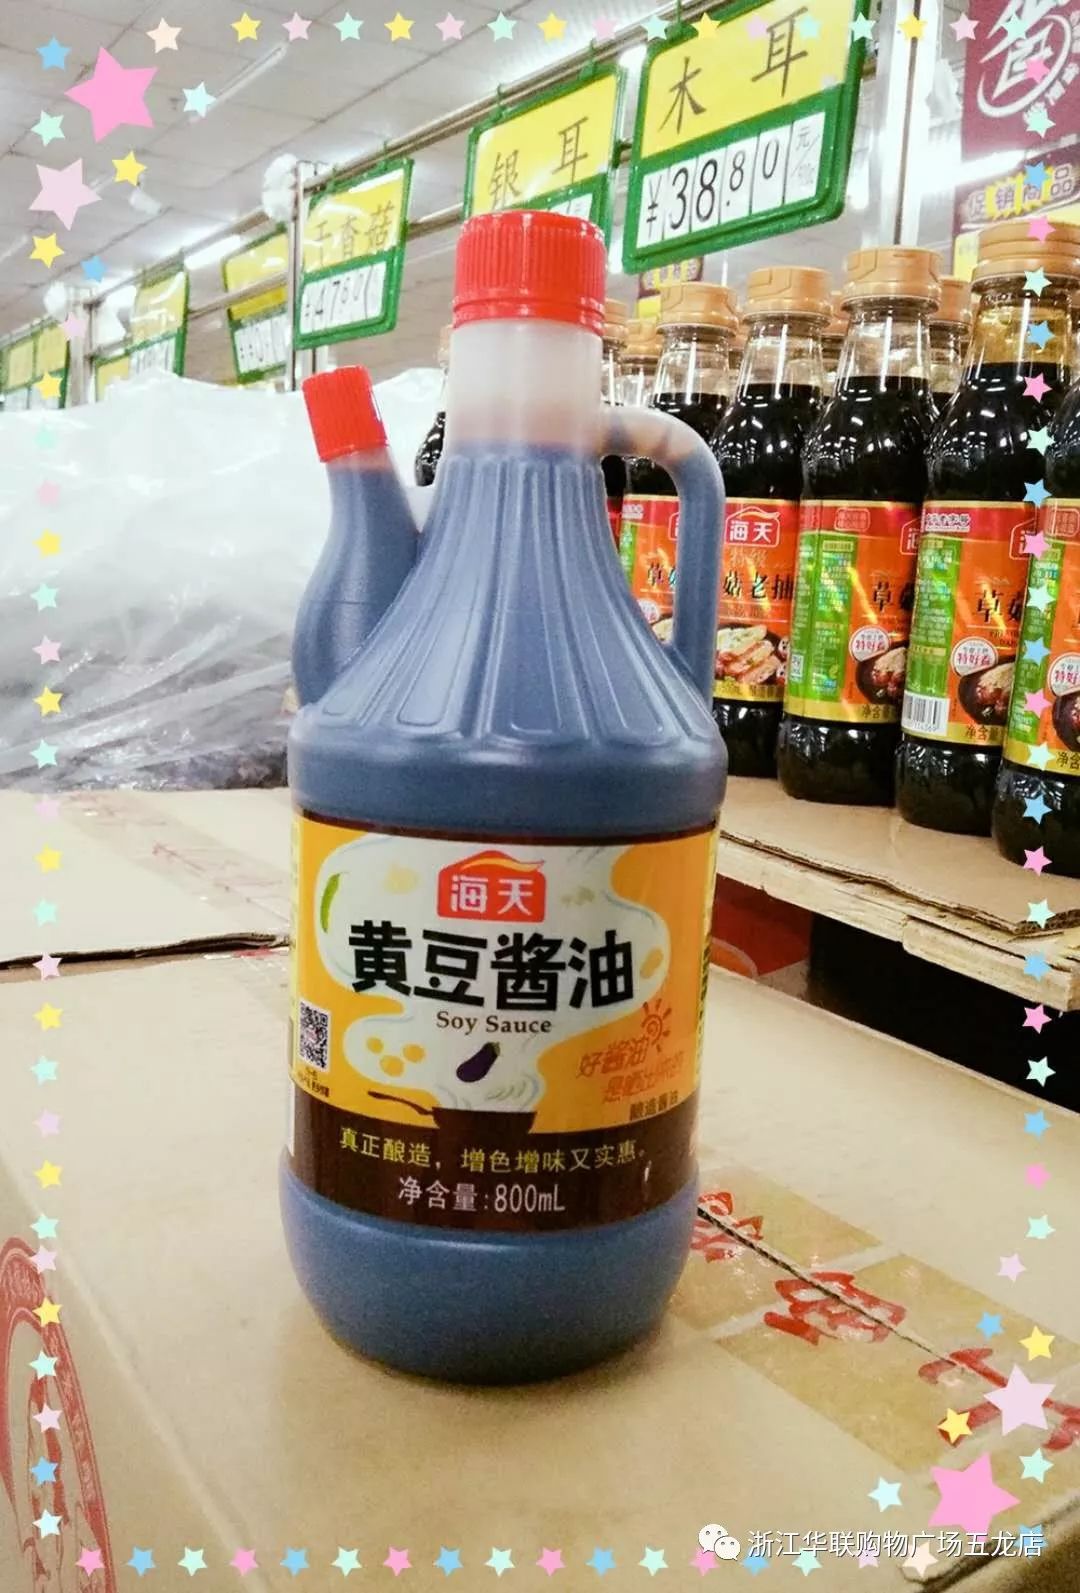 海天黄豆酱油 5.9元/壶